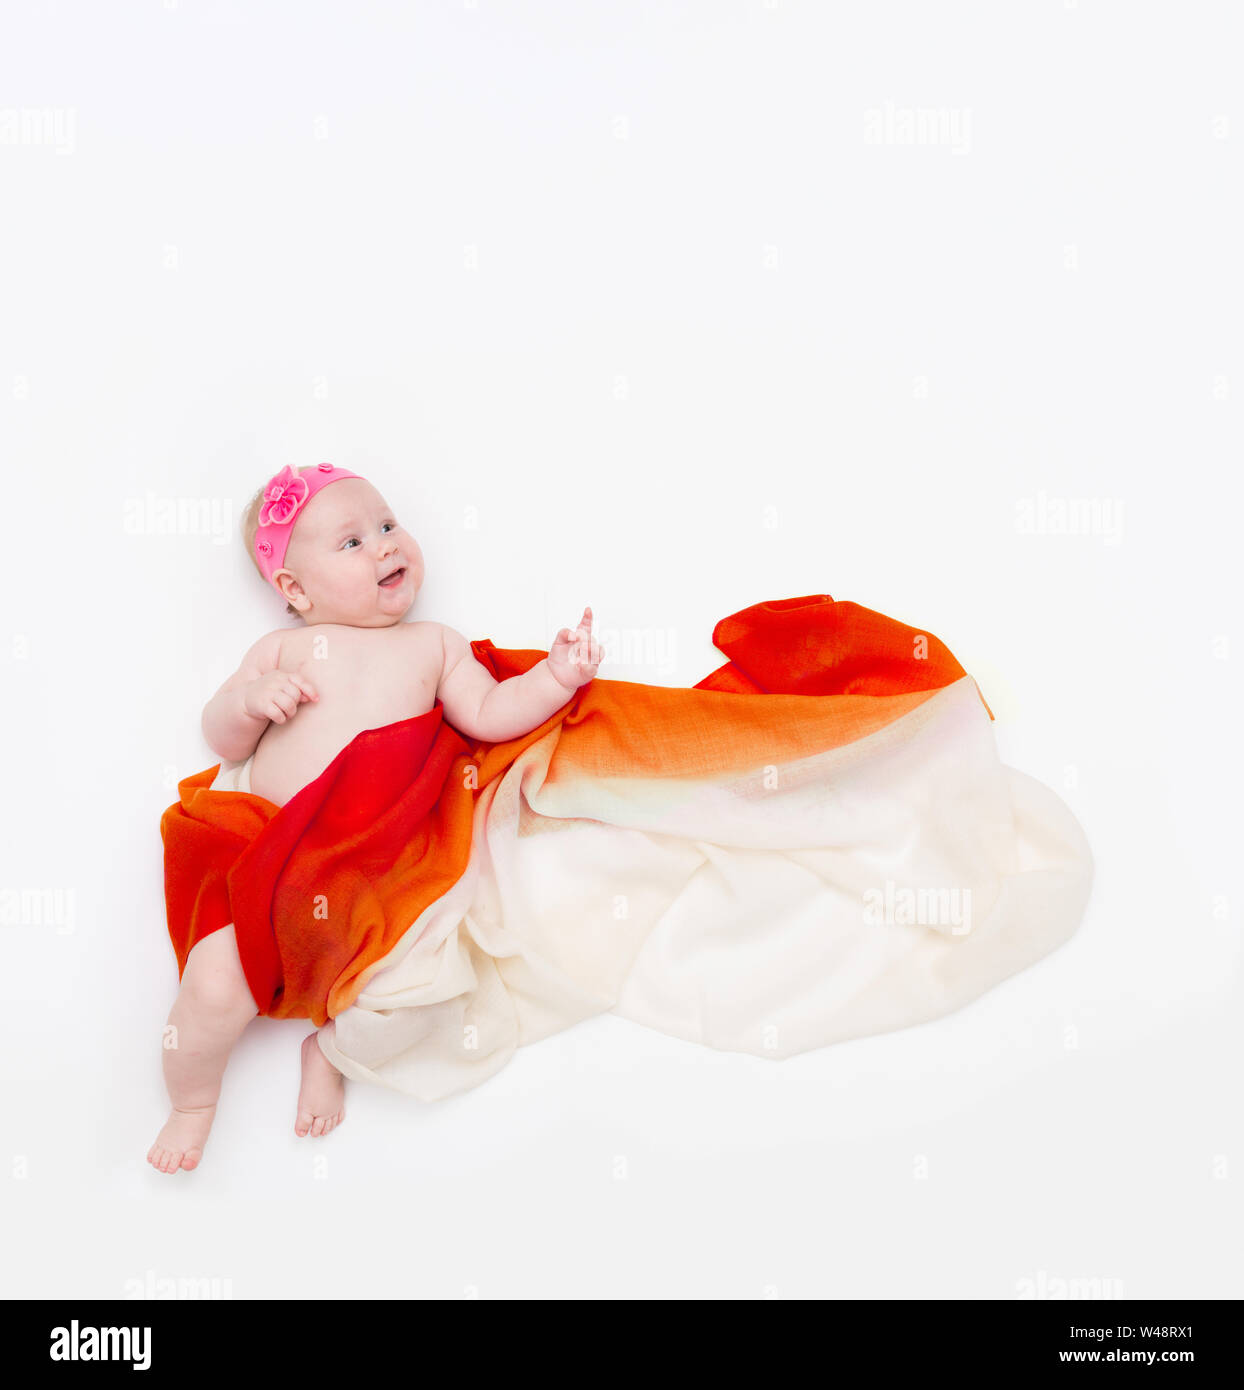 Blick von oben auf die niedlichen Baby Baby gewickelt in einem orangefarbenen Schal nach oben zeigt. Stockfoto